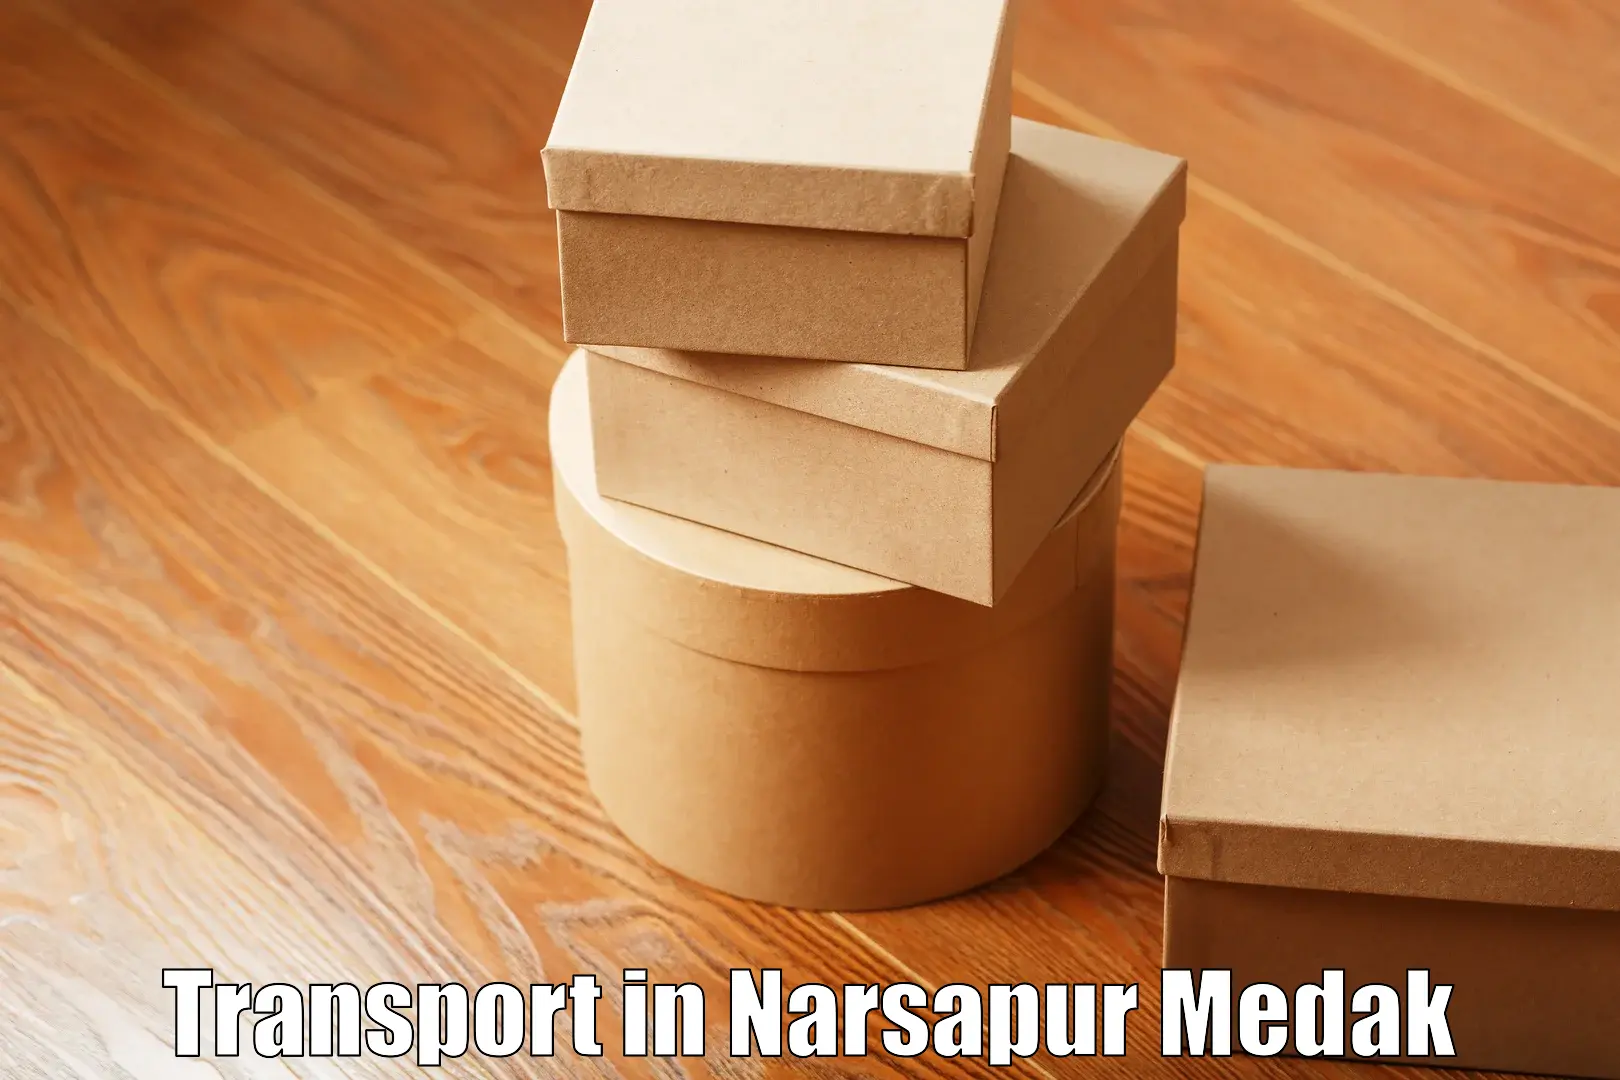 Cargo transportation services in Narsapur Medak